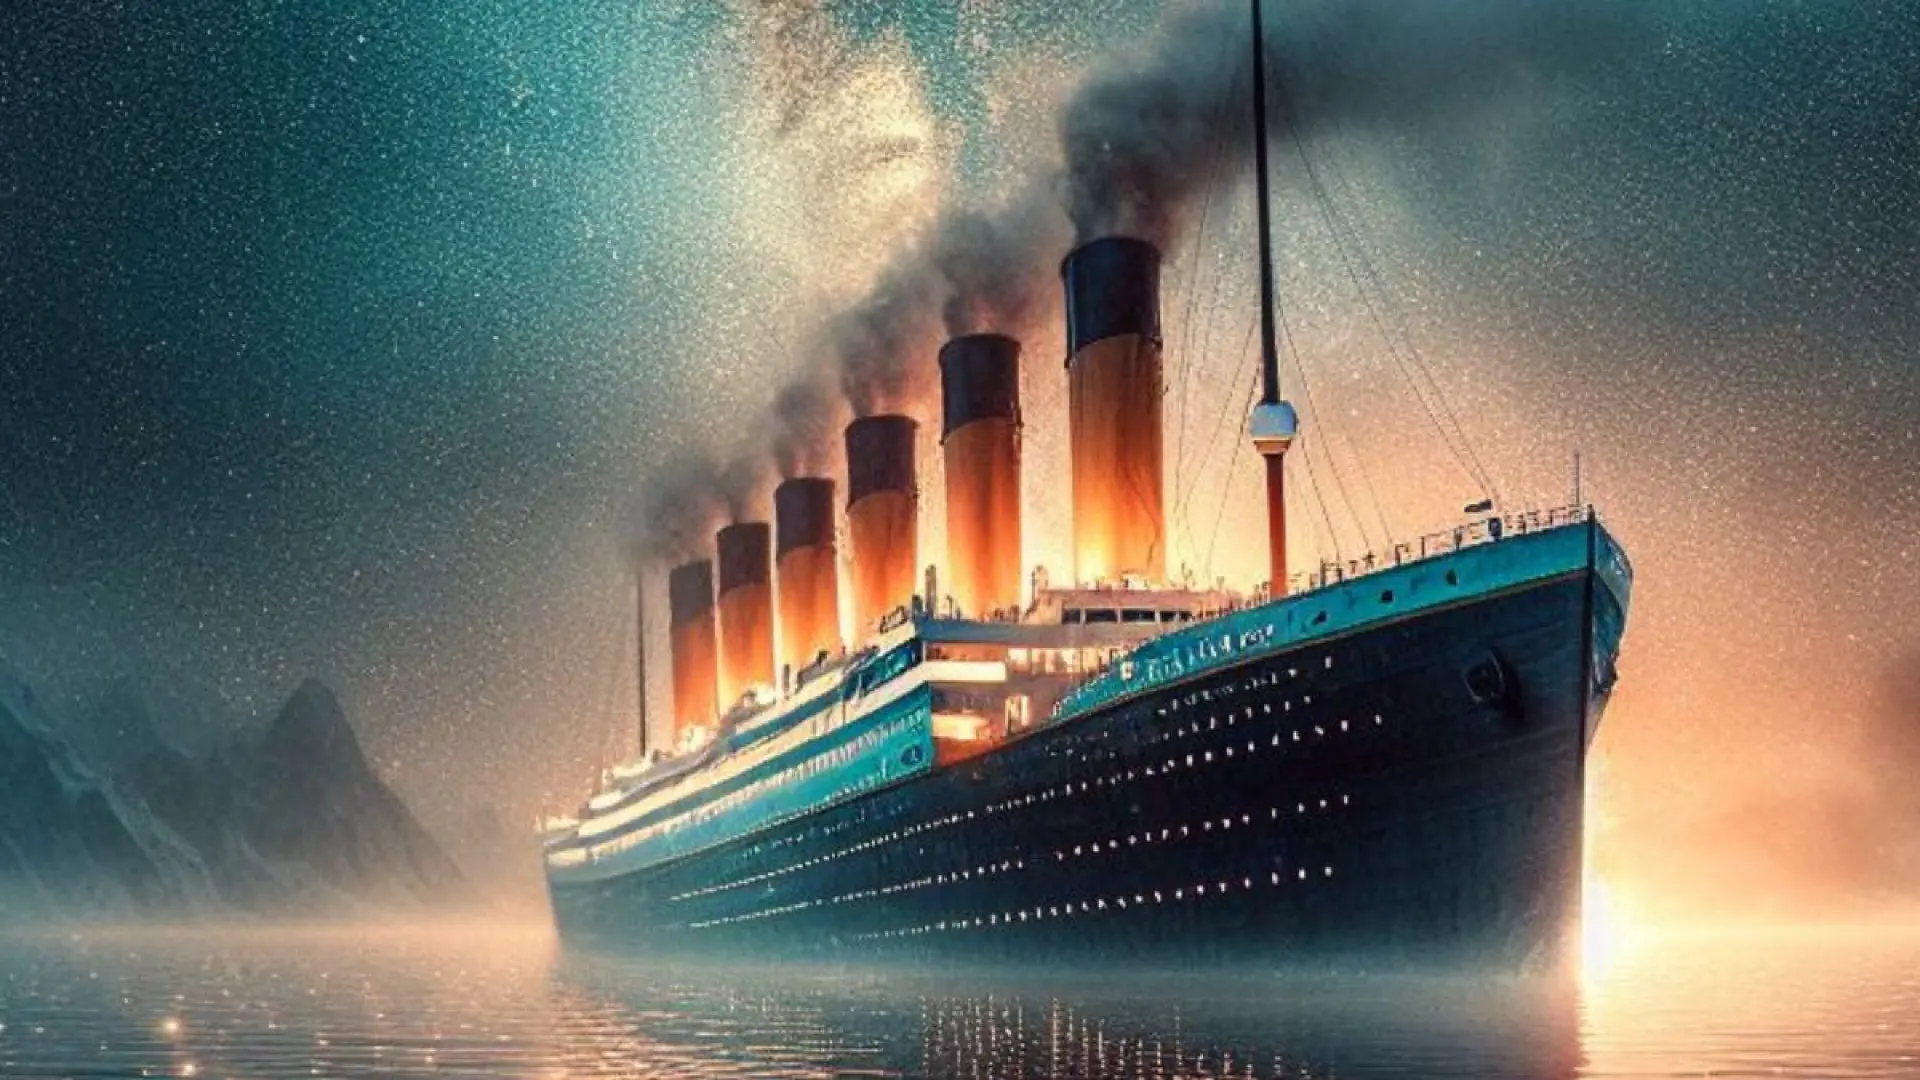 Megaconstrucciones: el Titanic vuelve a surcar los mares, pero esta vez con un radar para detectar icebergs